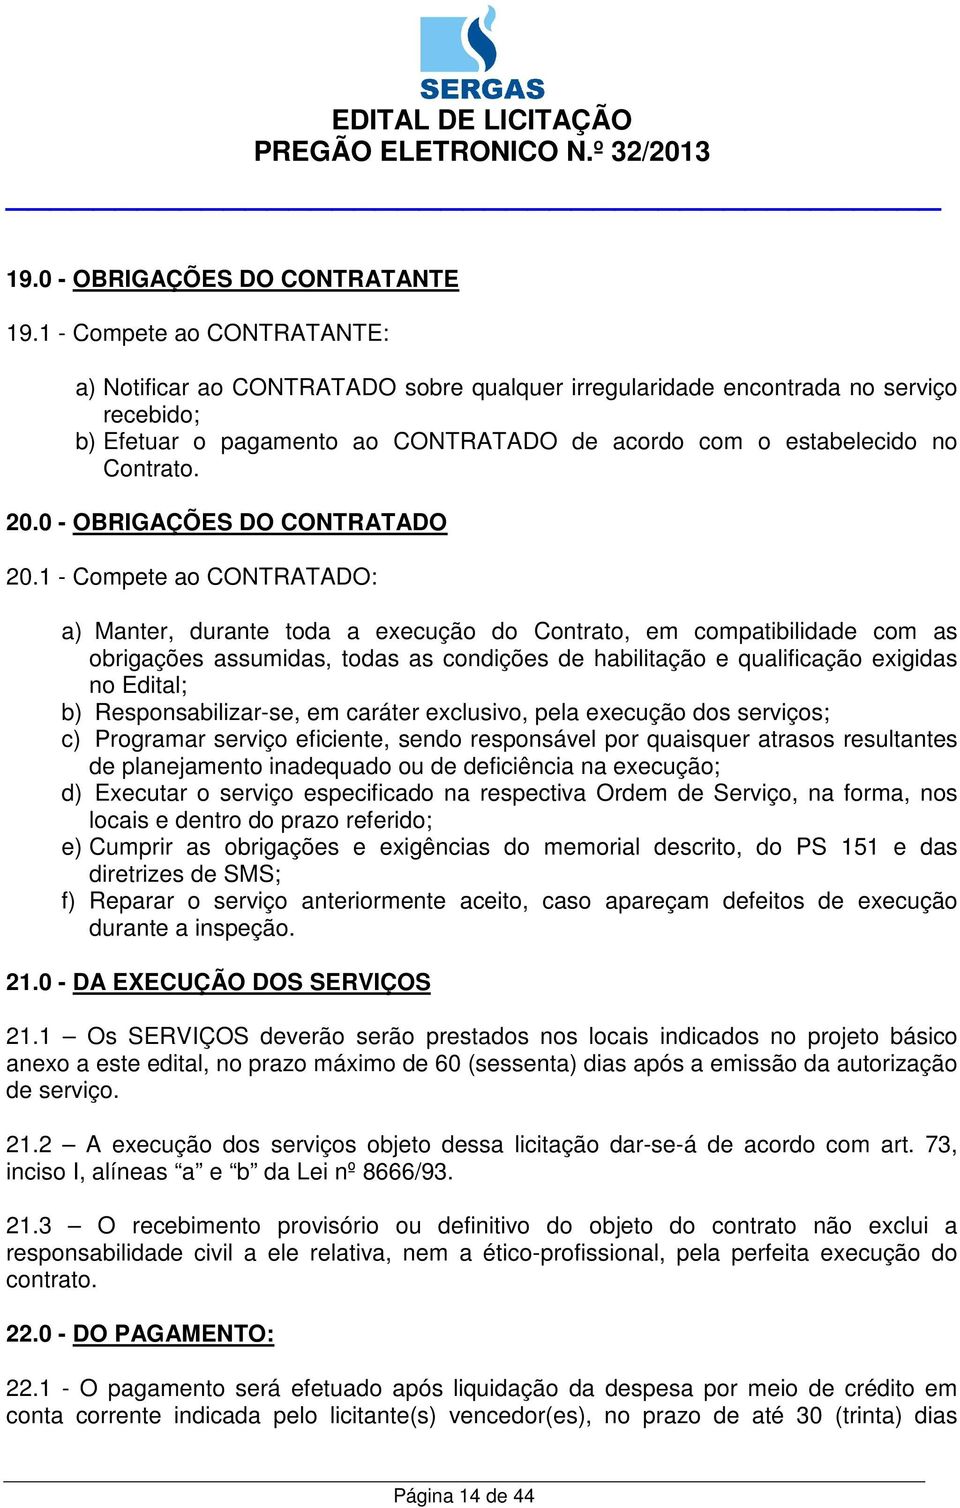 0 - OBRIGAÇÕES DO CONTRATADO 20.